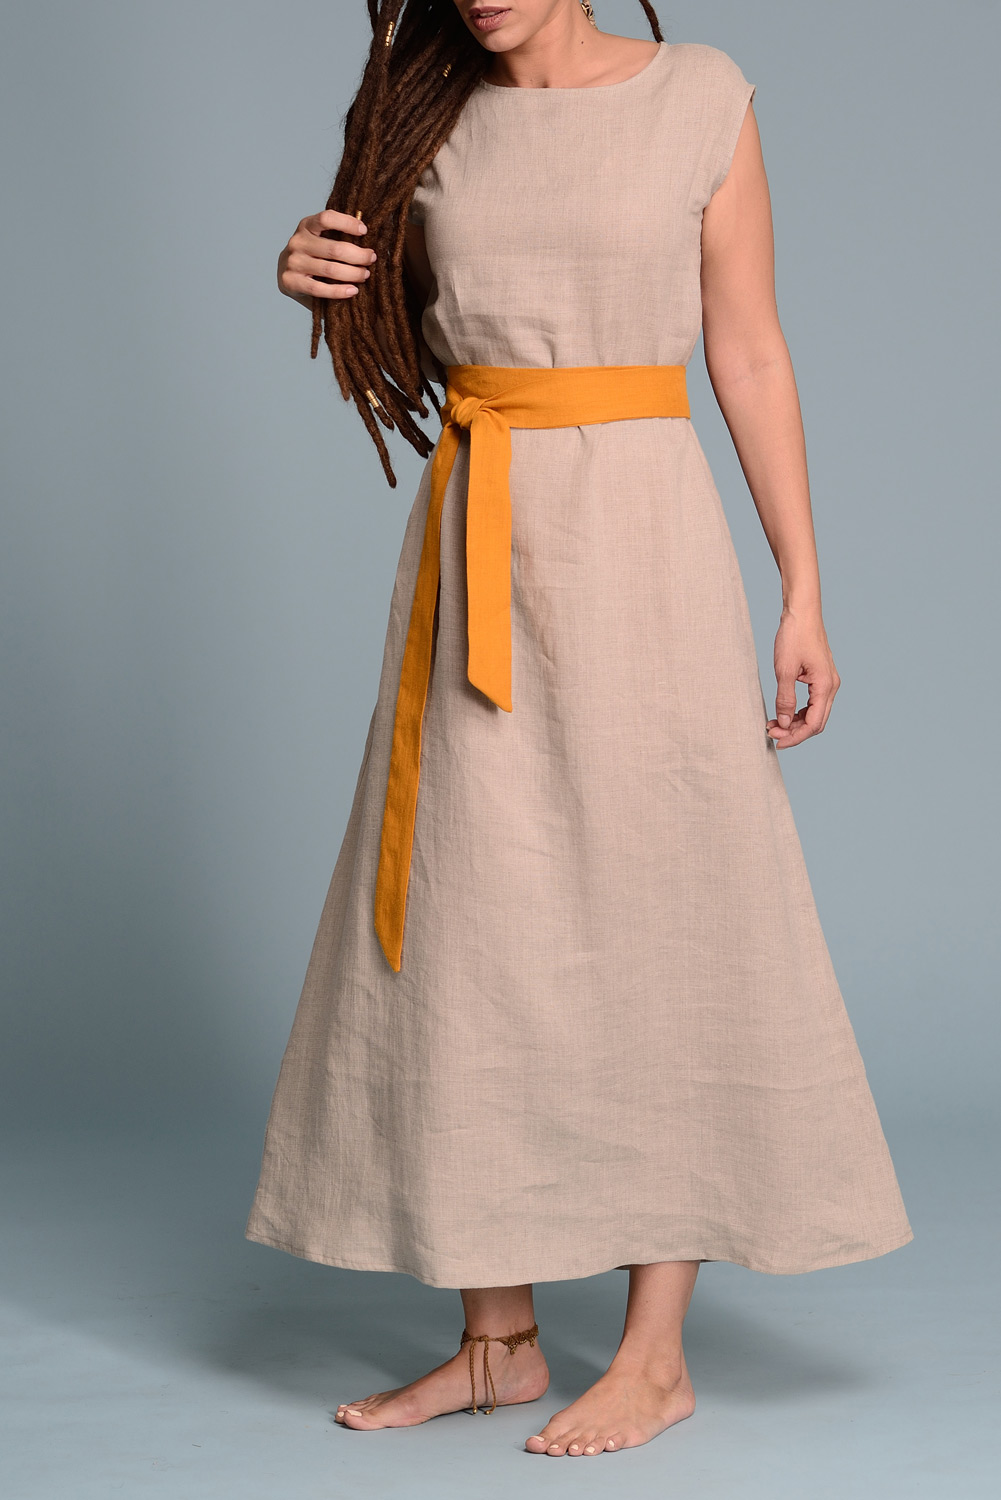 Soft Linen Dress / Handmade Dress / Minimal Linen Tunica / Baltic Linen /  Elegant Summer Dress / Fit and Flare Dress / Sleeveless Dress 